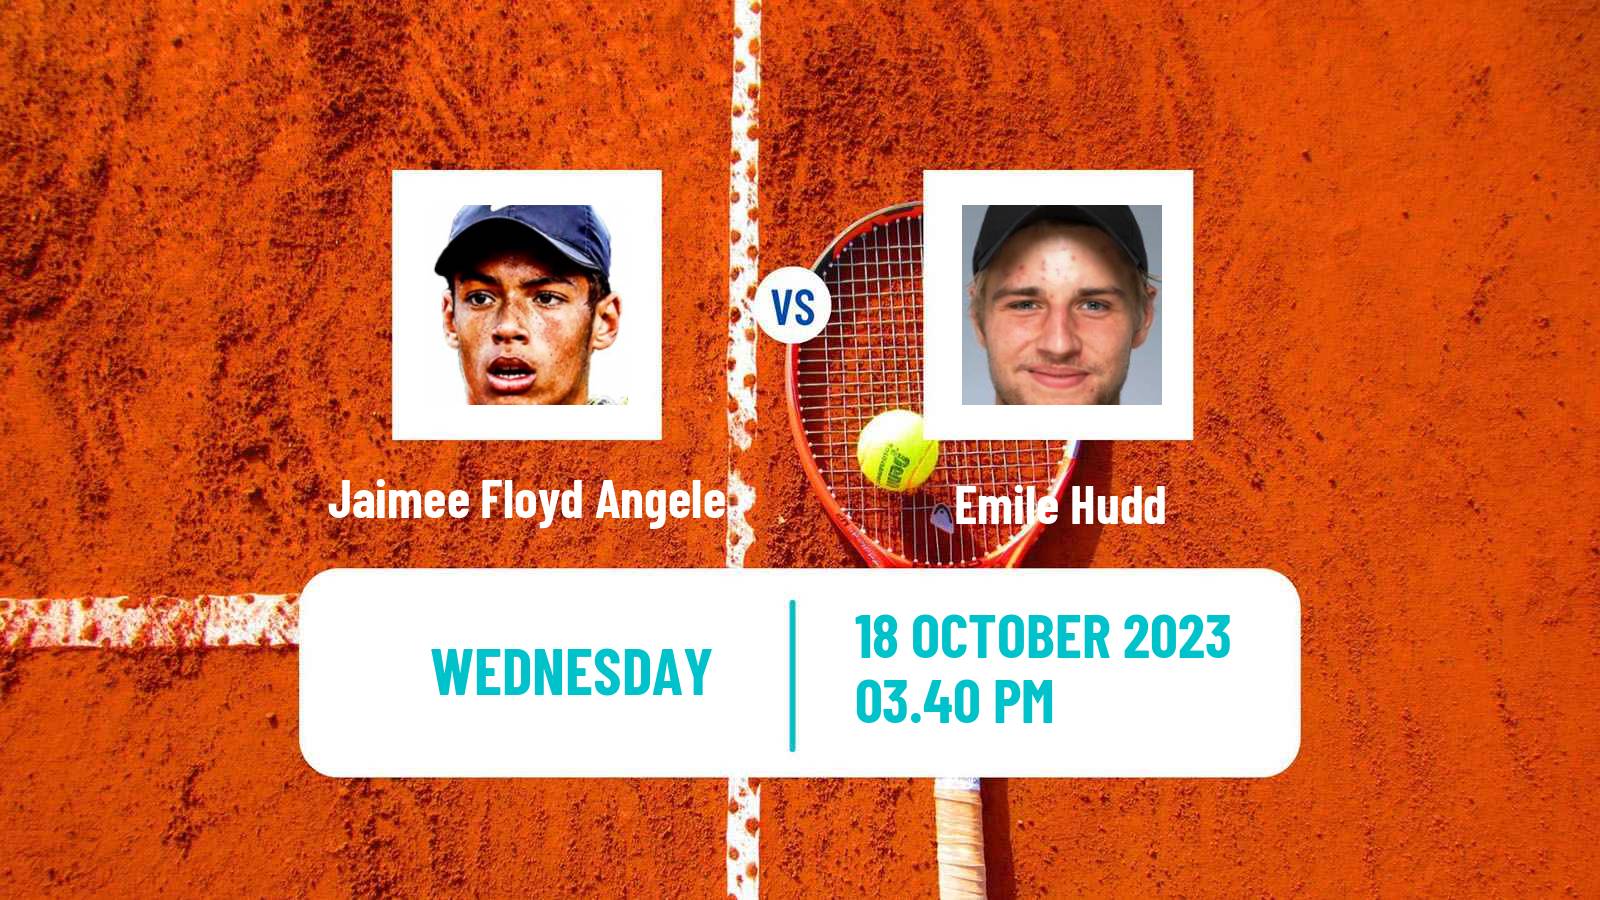 Tennis ITF M15 Las Vegas Nv Men Jaimee Floyd Angele - Emile Hudd